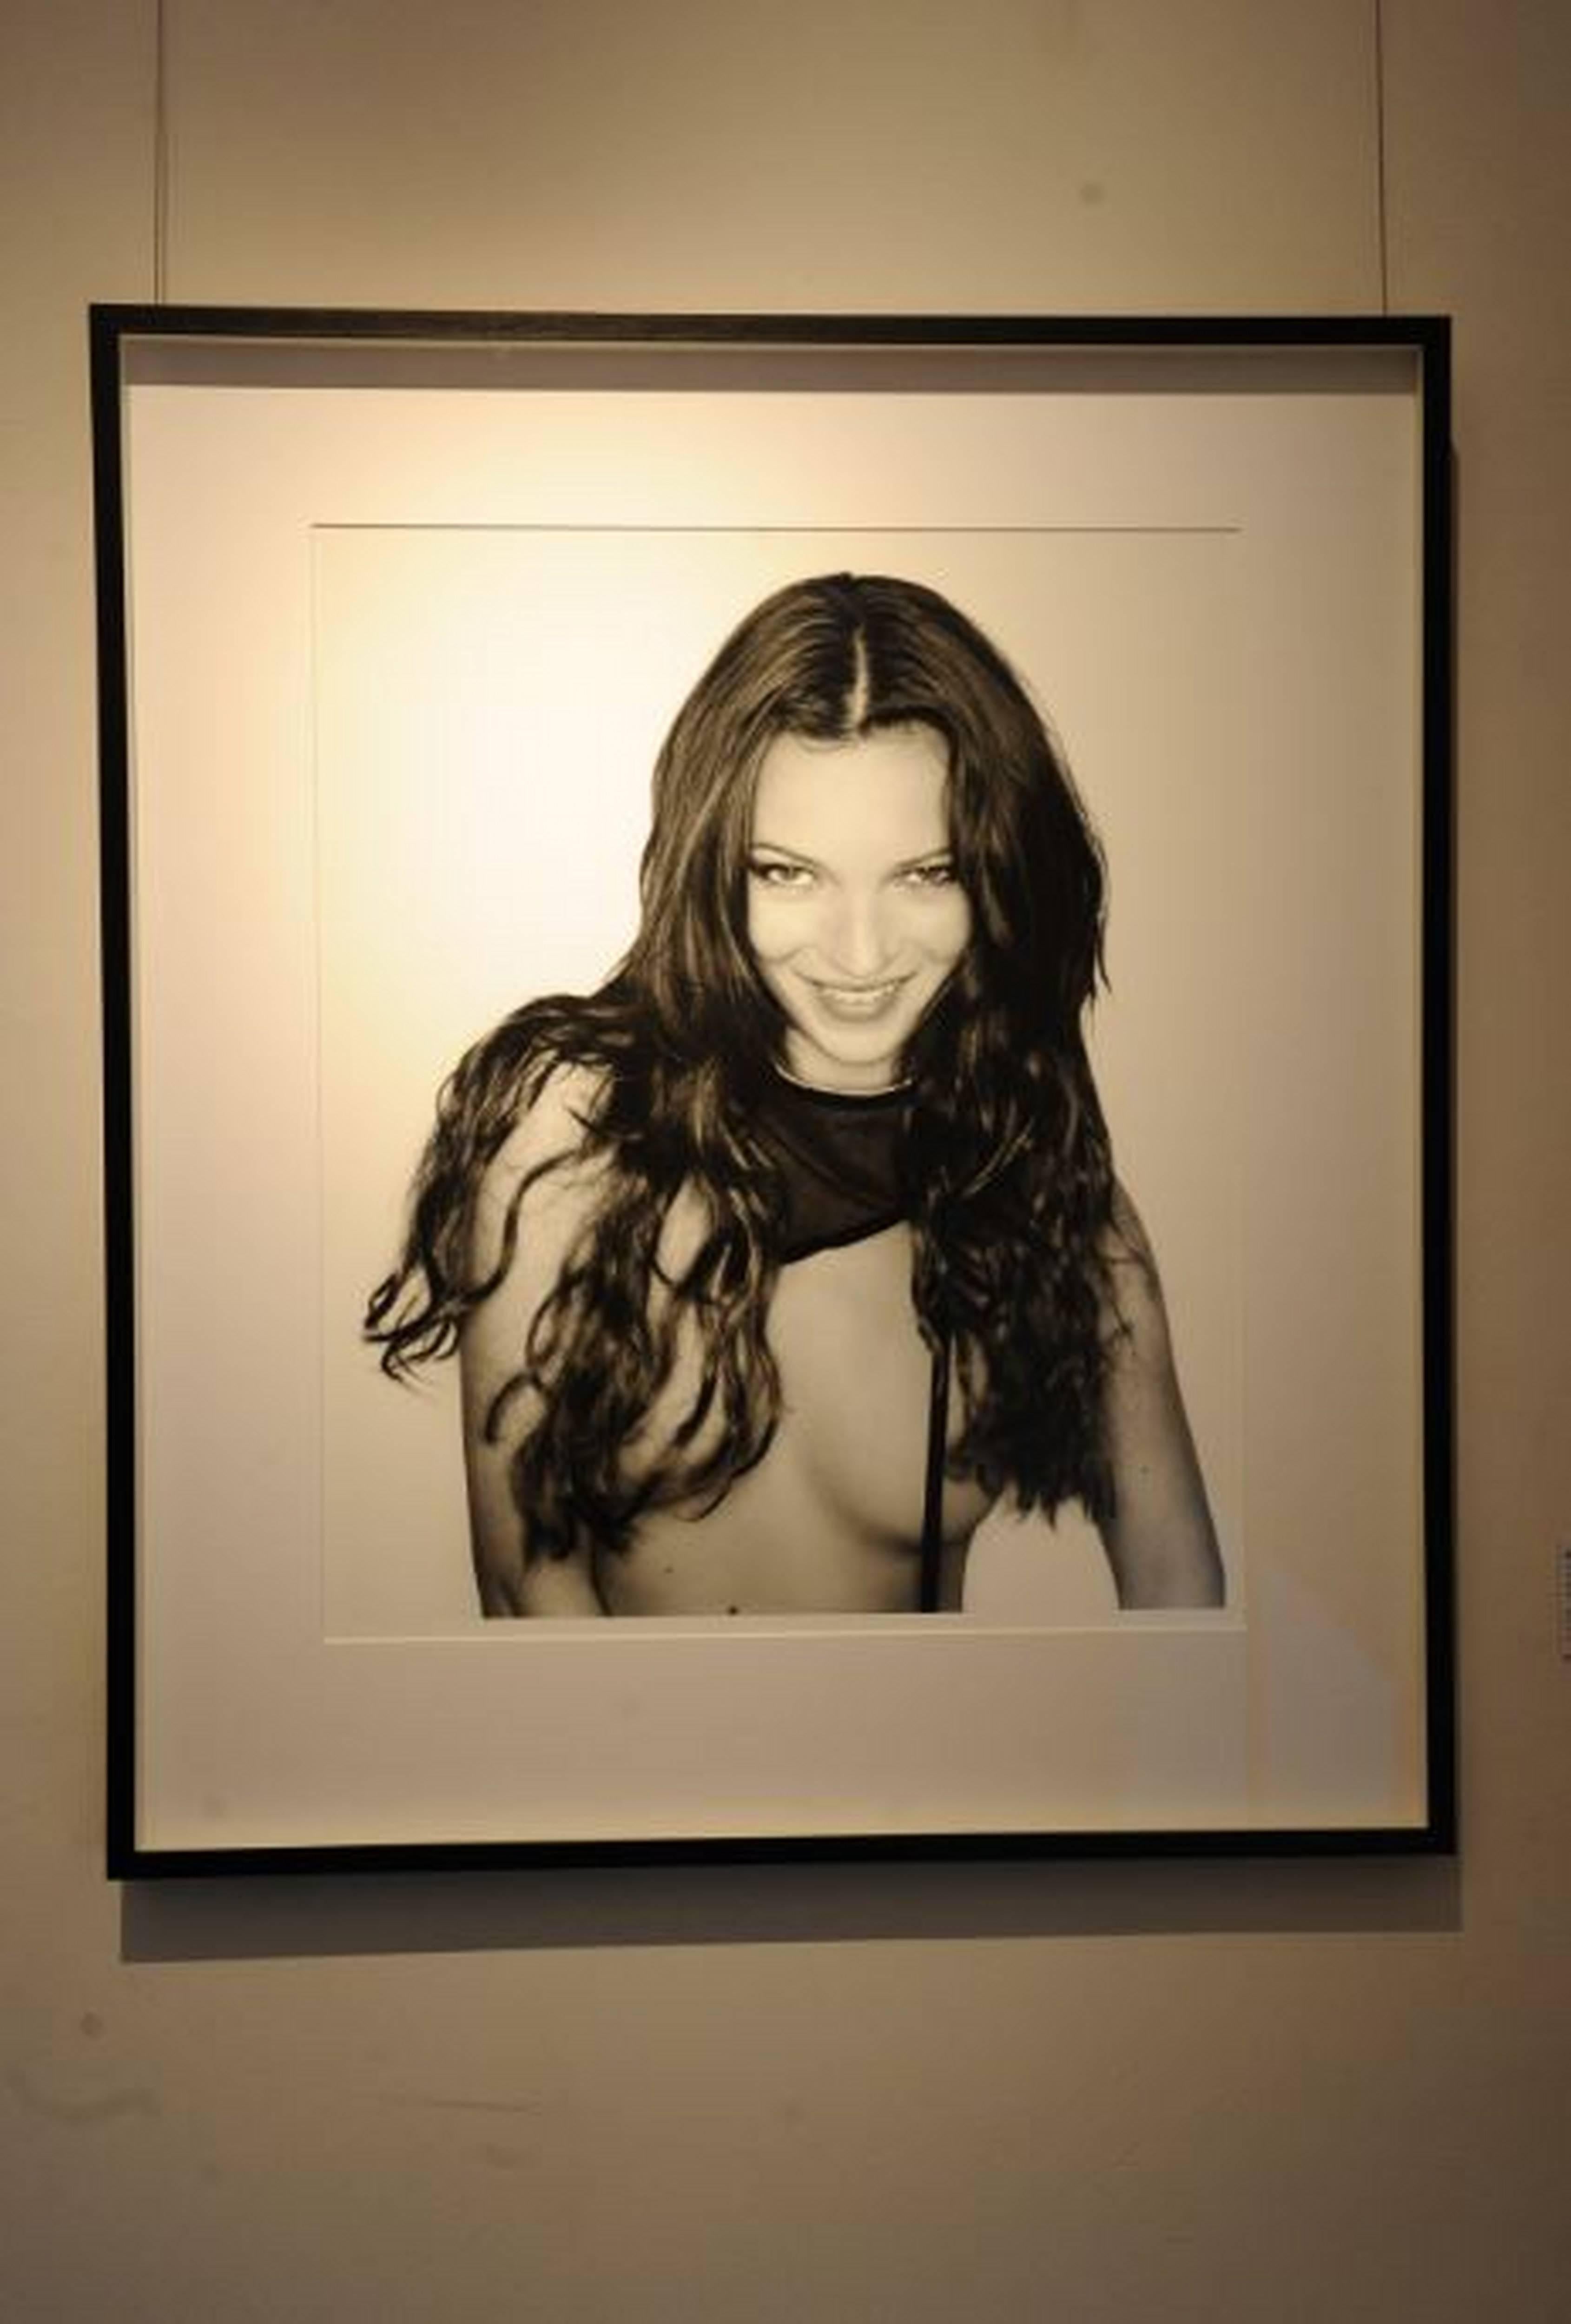 Cheeky Kate - portrait nu du top models Kate Moss, photographie d'art, 1999 - Photograph de Rankin